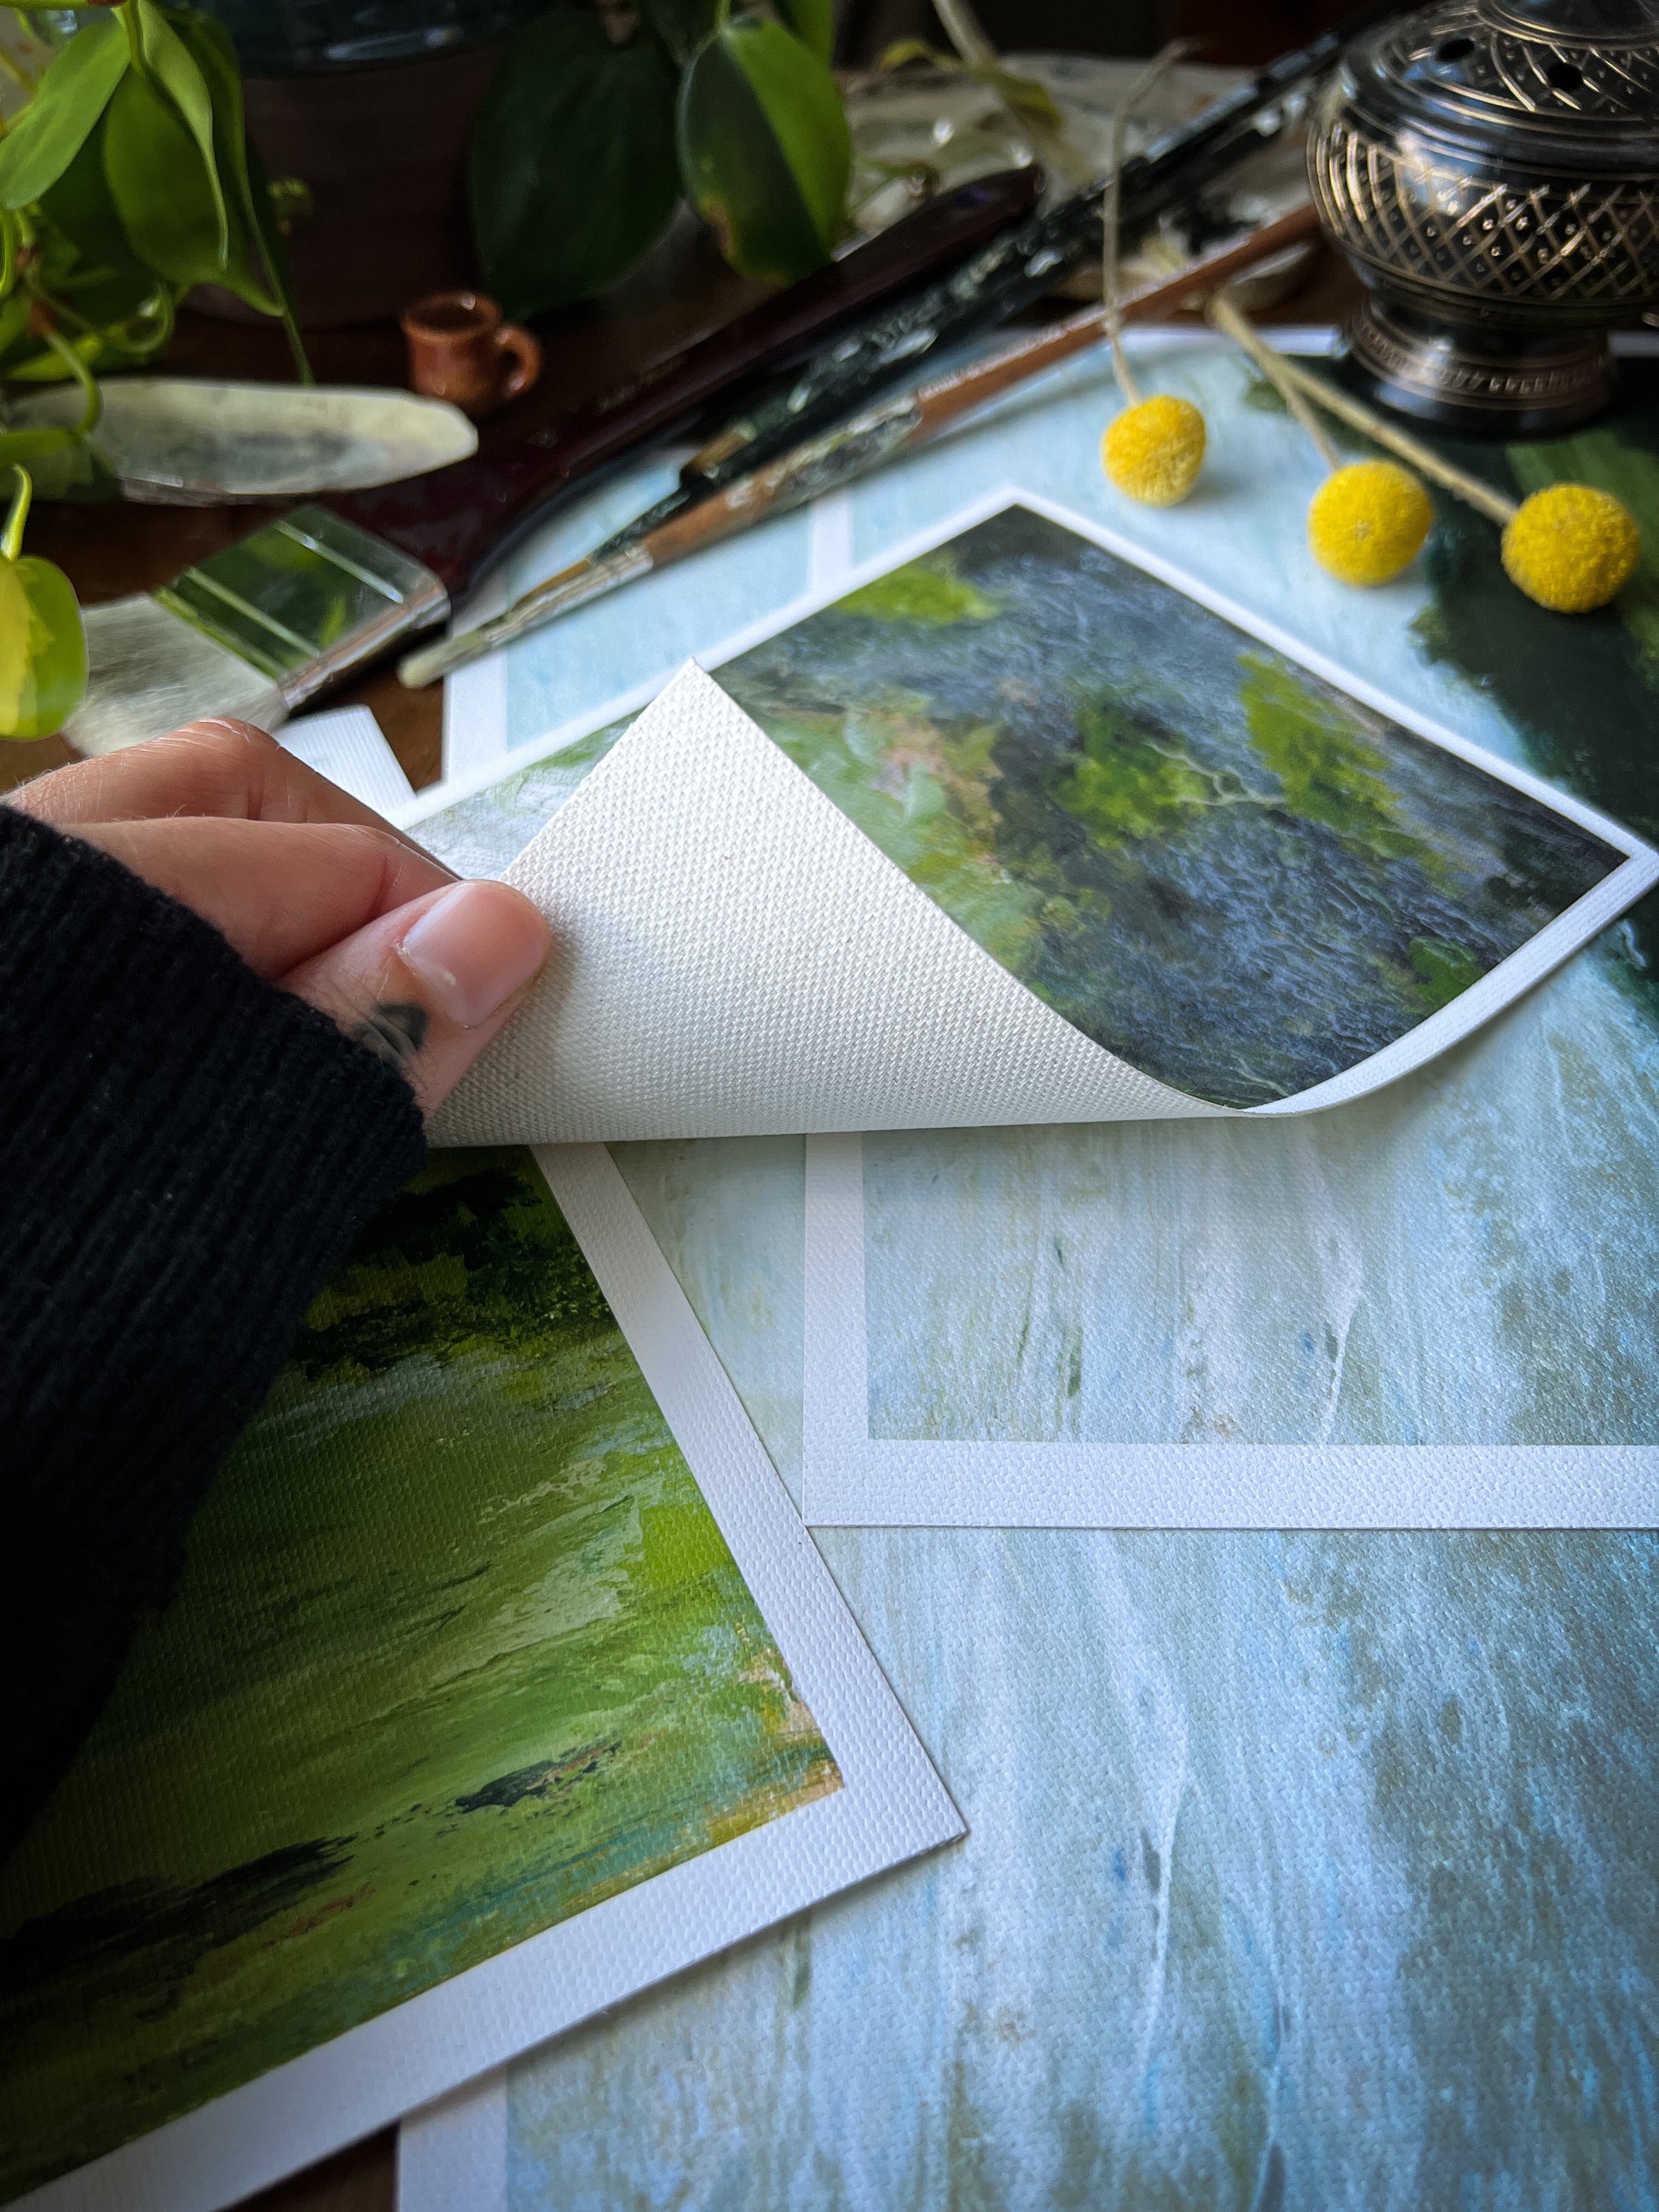 hand holding landscape archival giclée matte canvas print to show fibers underneath canvas